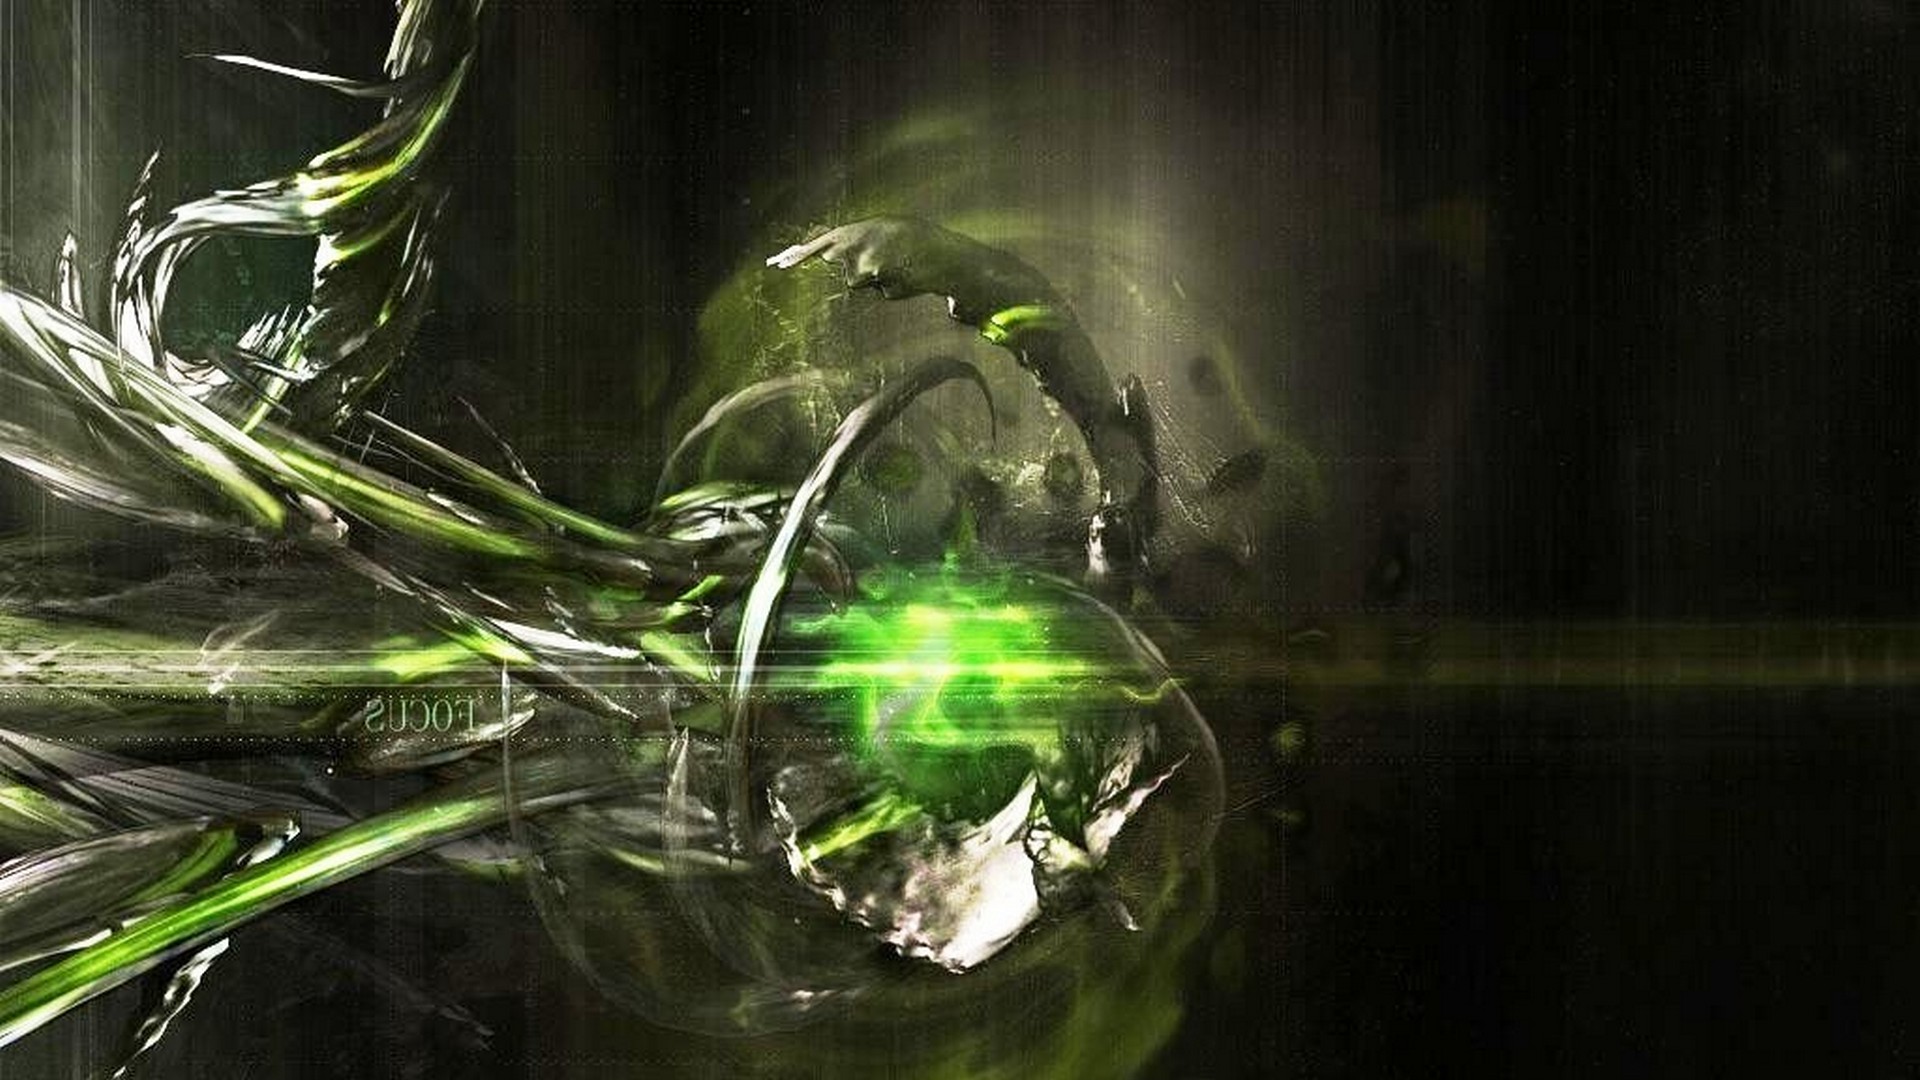 Green Abstract Wallpaper - Green Lantern - HD Wallpaper 